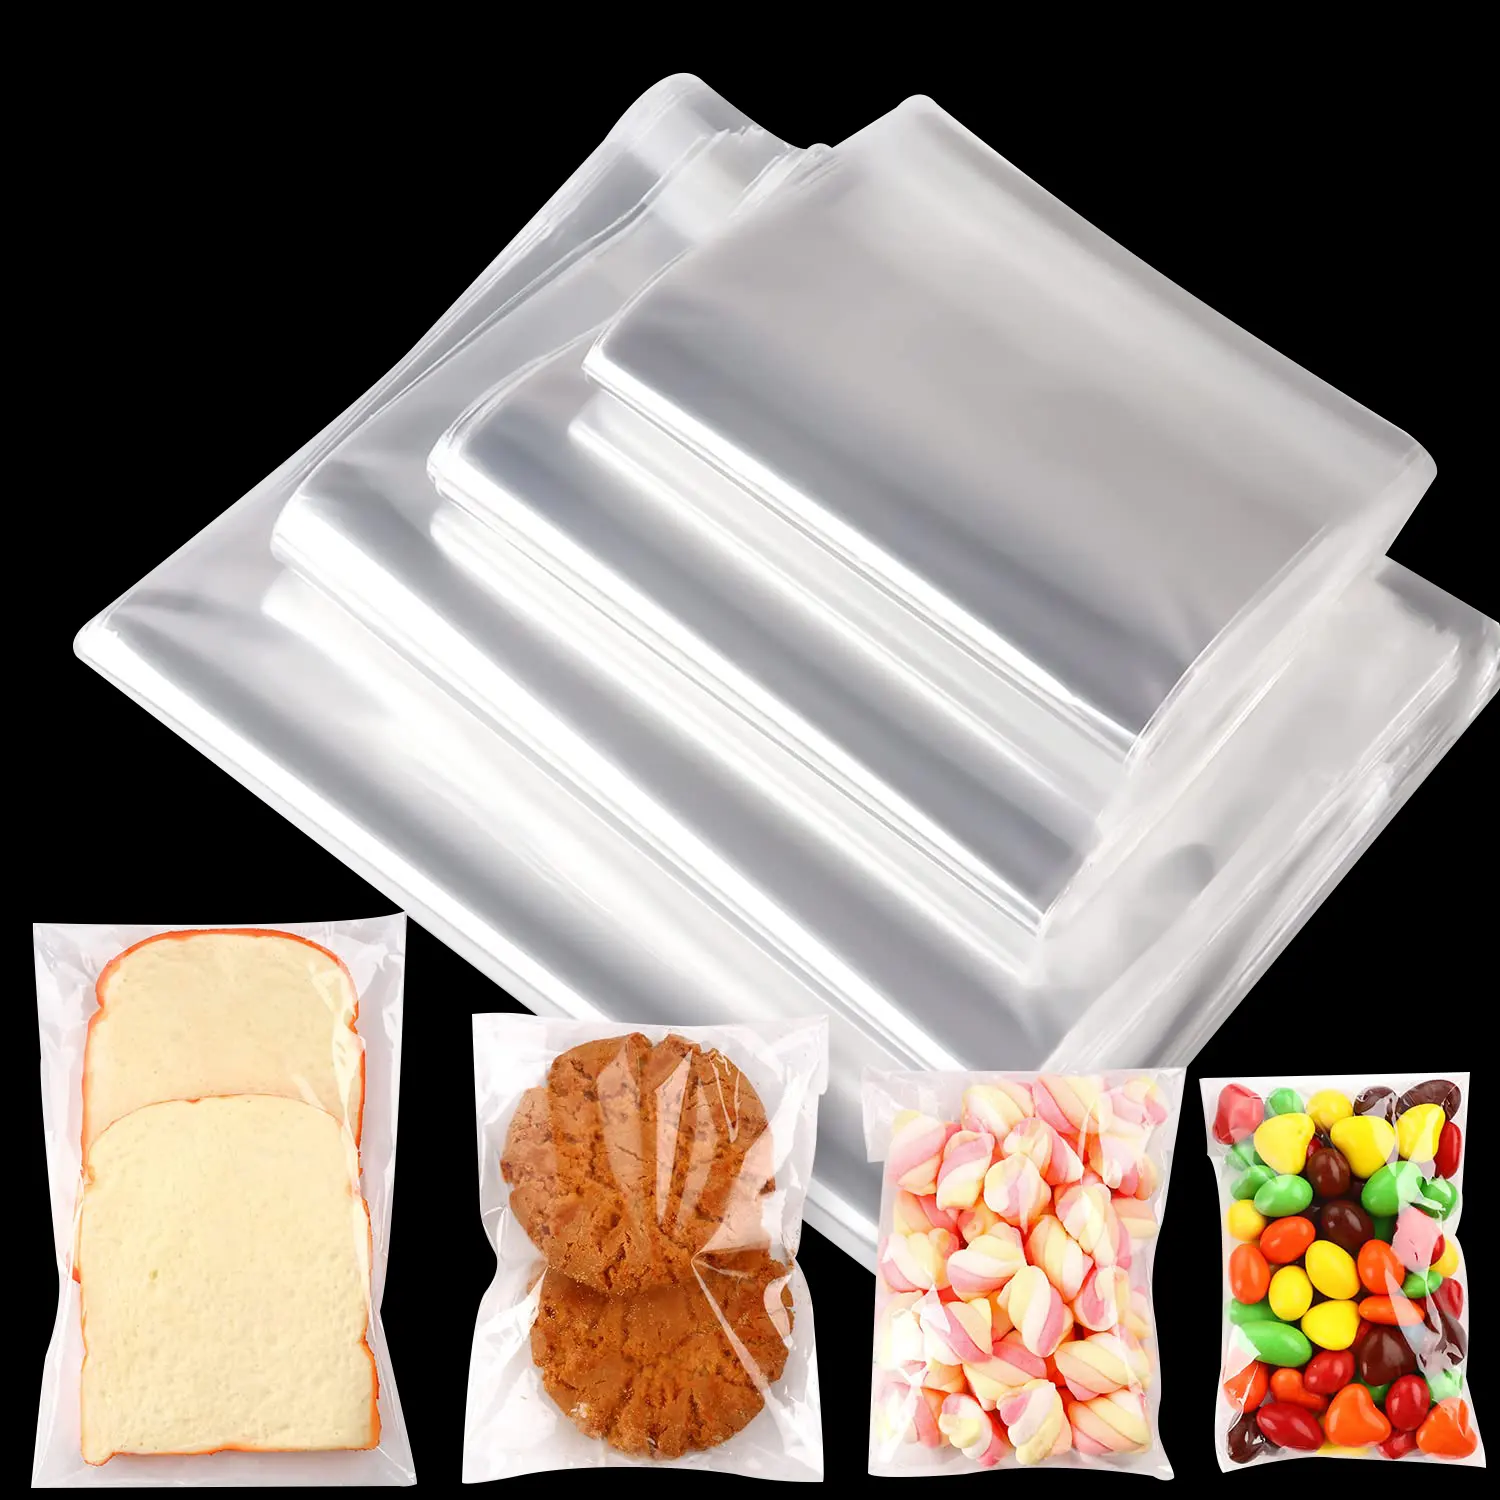 Tas kemasan roti bakar berperekat transparan kantung OPP plastik plastik selofan kue kecil kantung Opp plastik